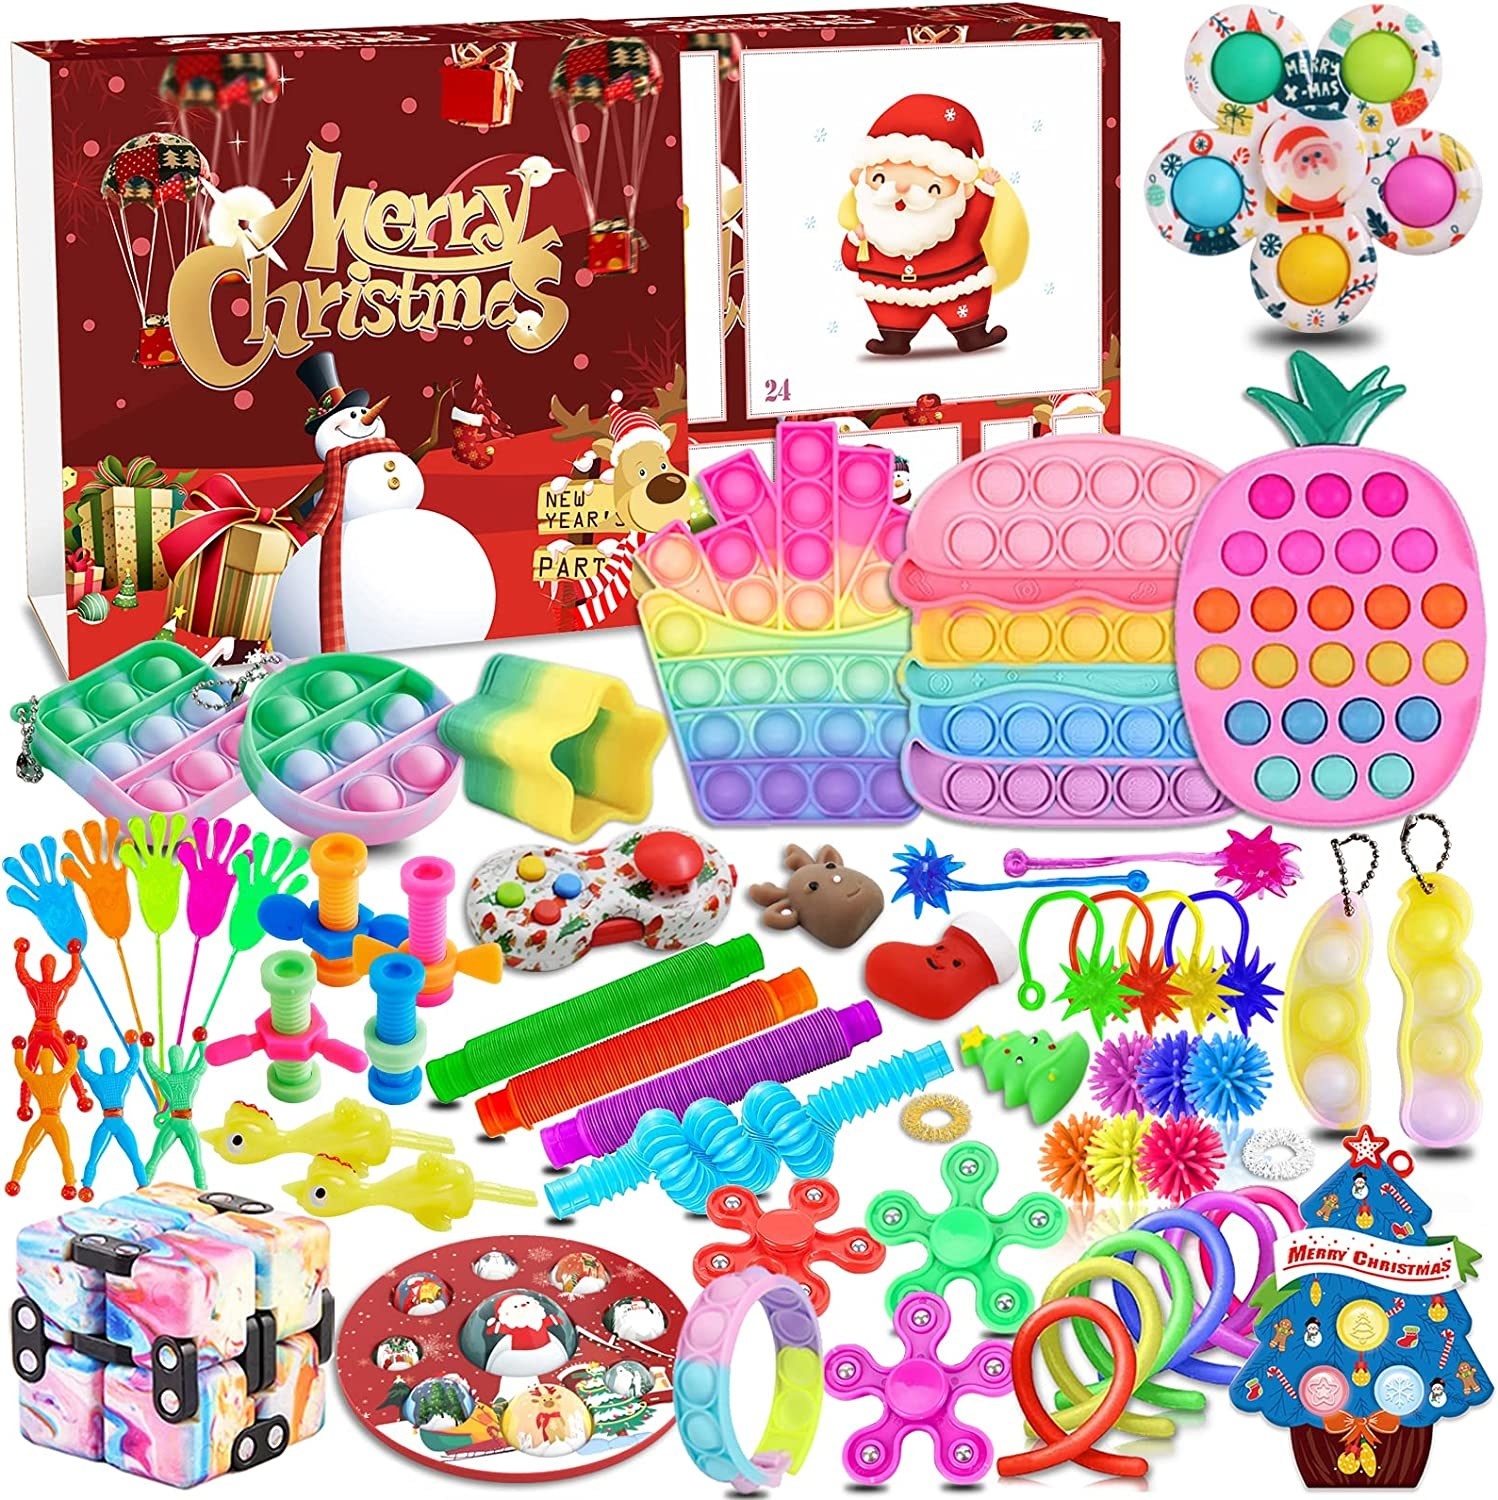 a bunch of fidget toys from inside an advent calendar